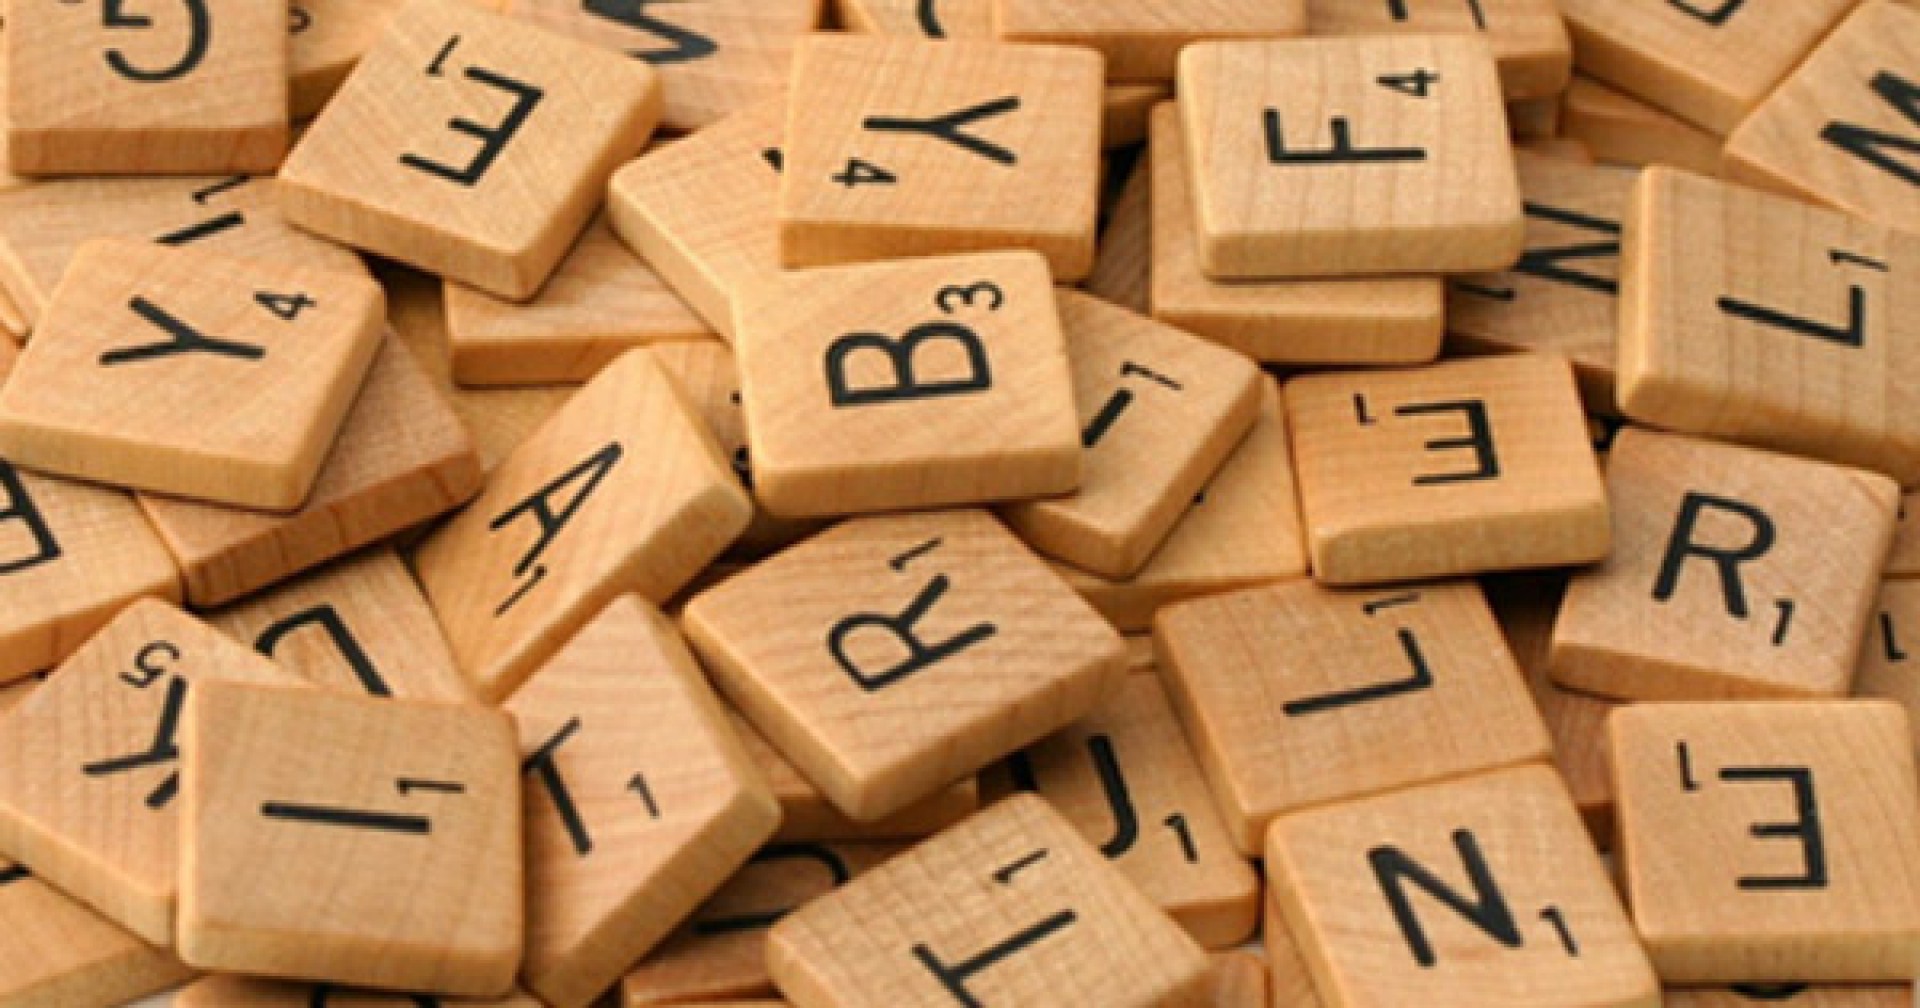 Game tiếng Anh cho người lớn: Có gì hot trong trò chơi từ vựng Scrabble kinh điển?